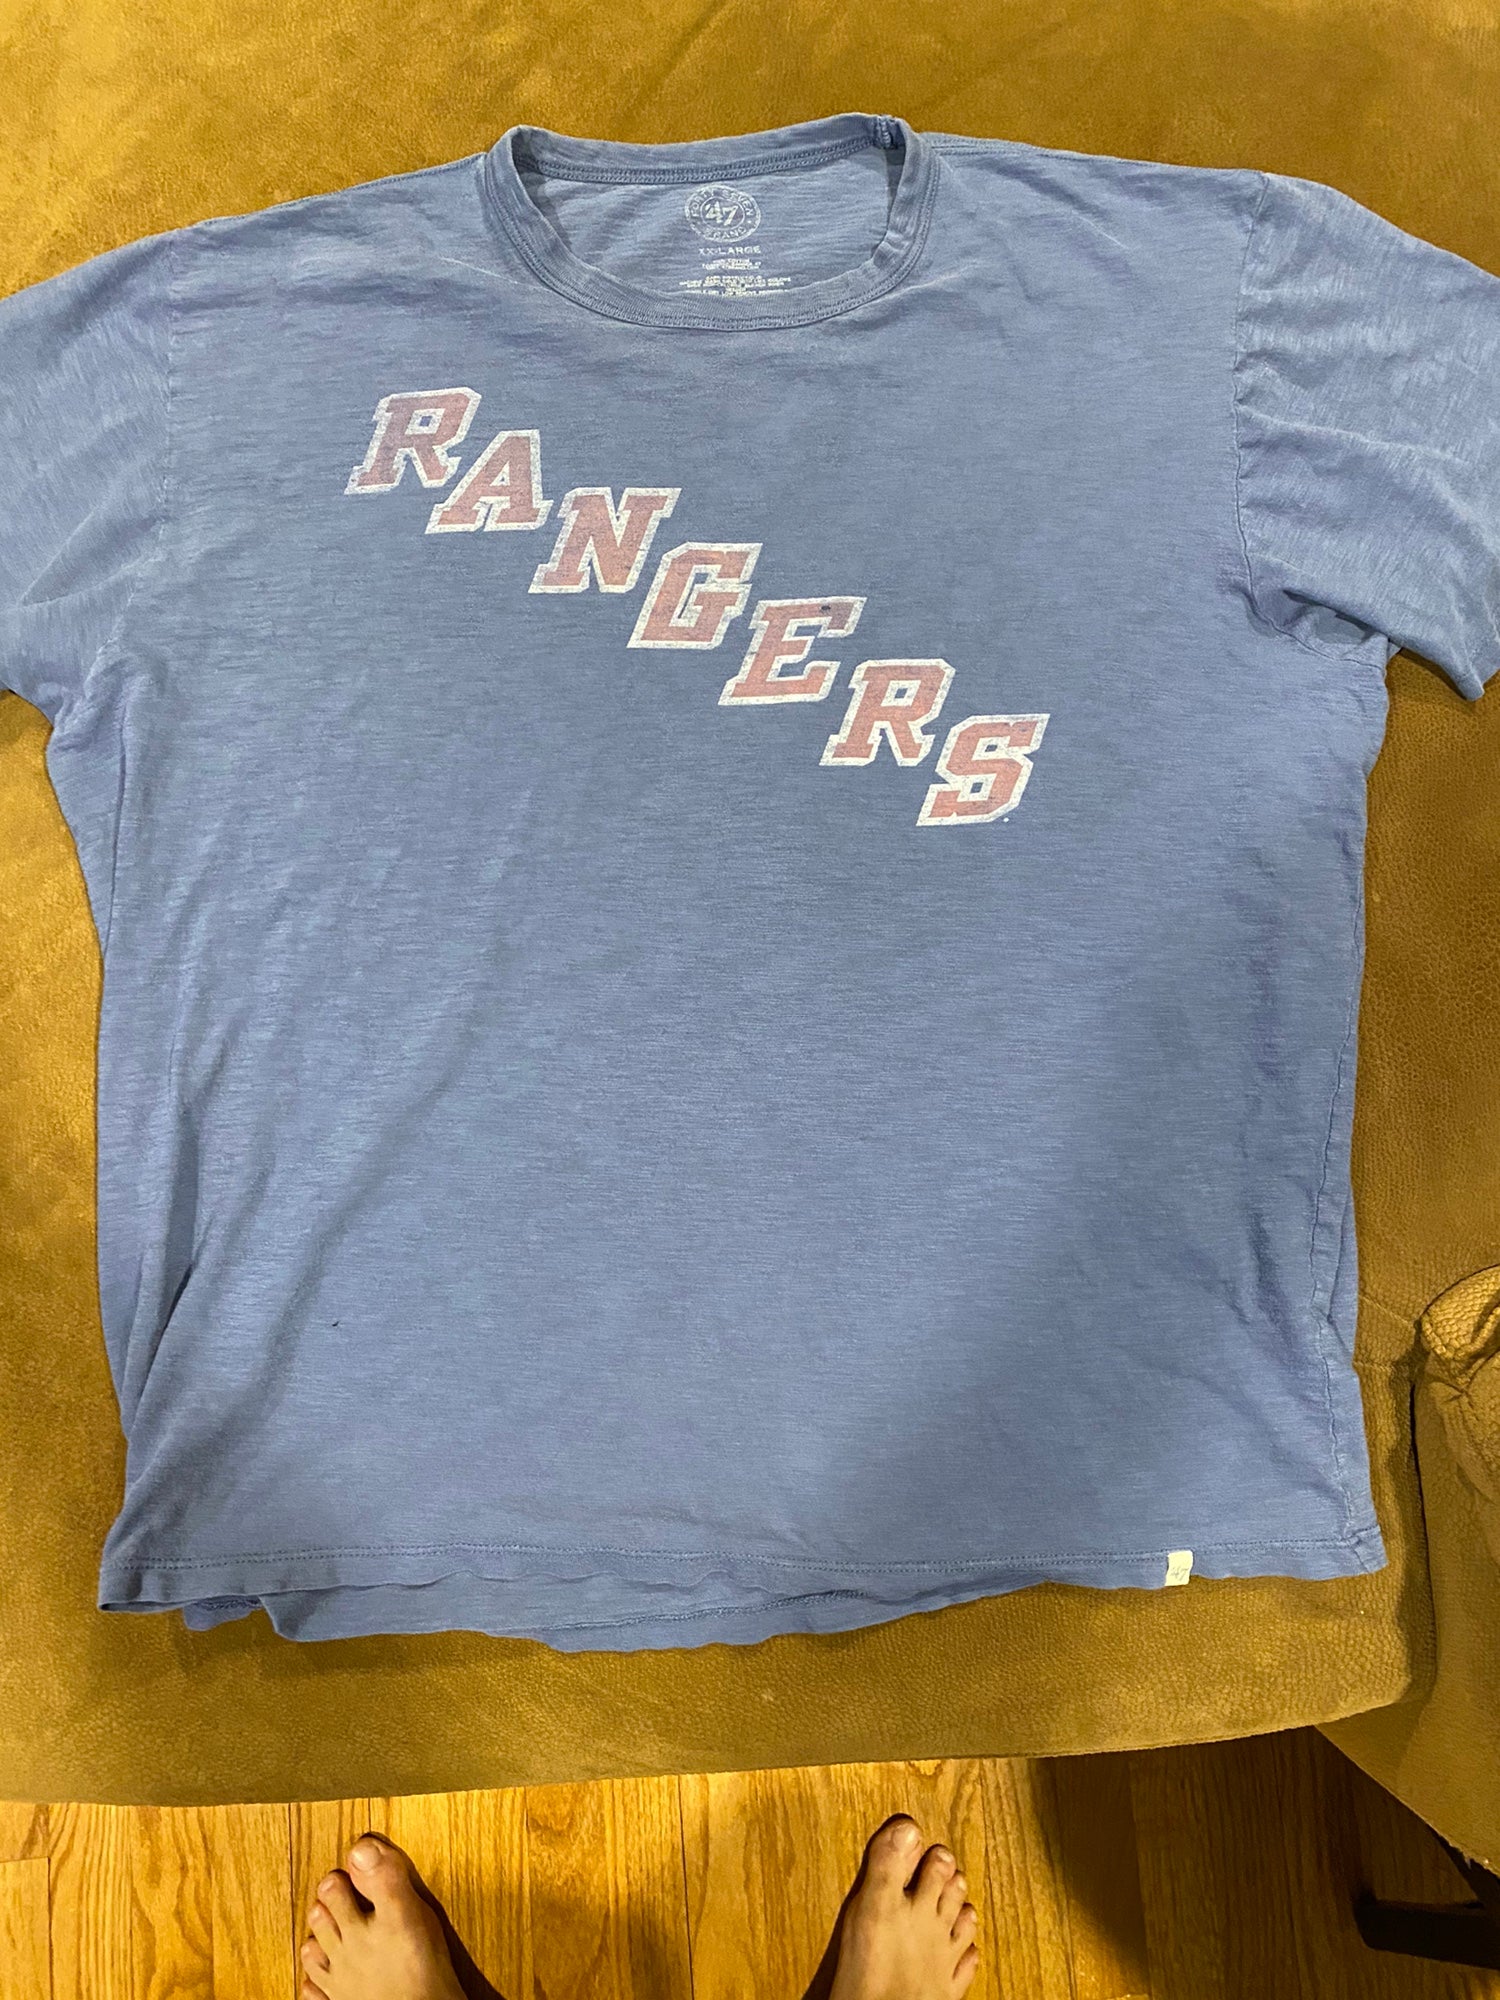 47 brand texas rangers shirt